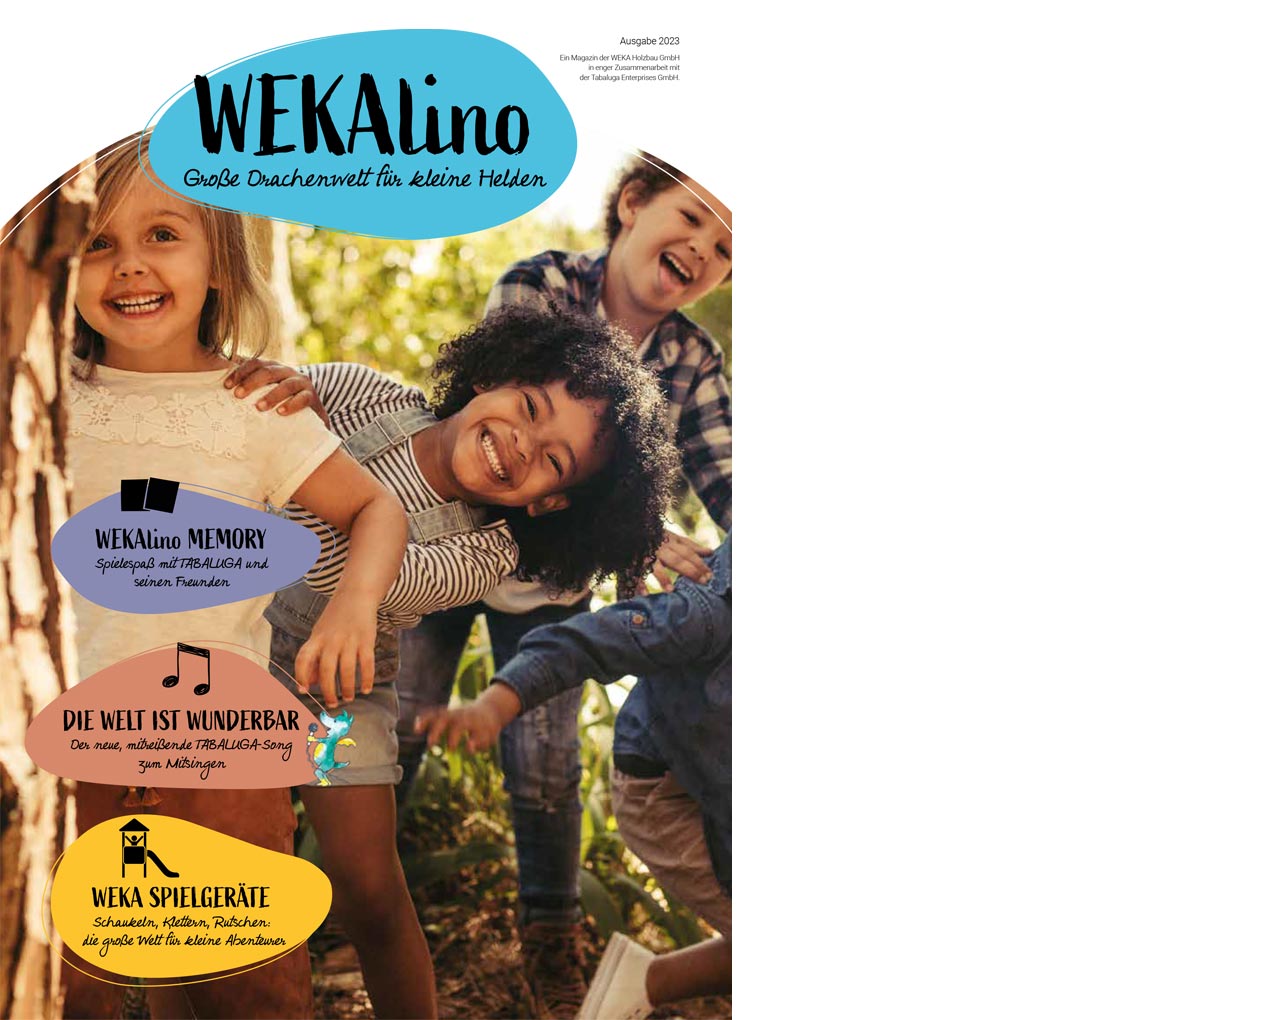 Titelbild des WEKAlino Magazins mit Kindern darauf